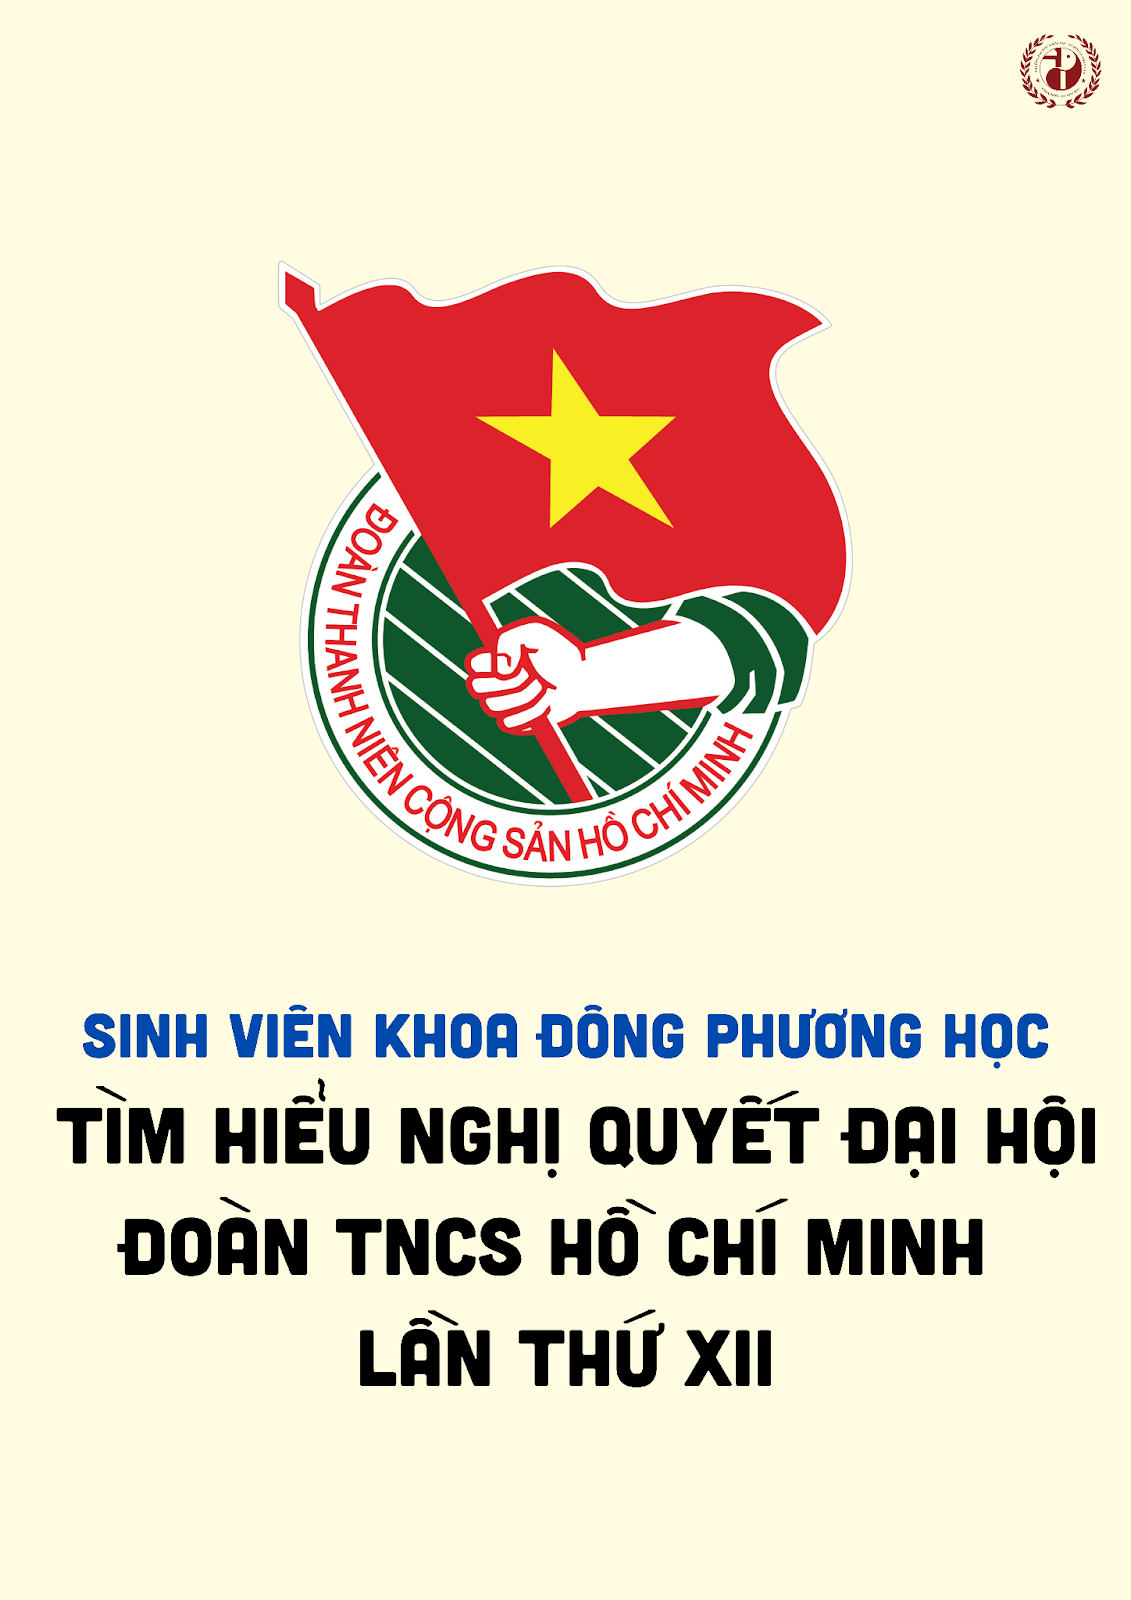 Sinh viên Đông phương học tìm hiểu nghị quyết Đại hội Đoàn TNCS Hồ Chí Minh lần thứ XII